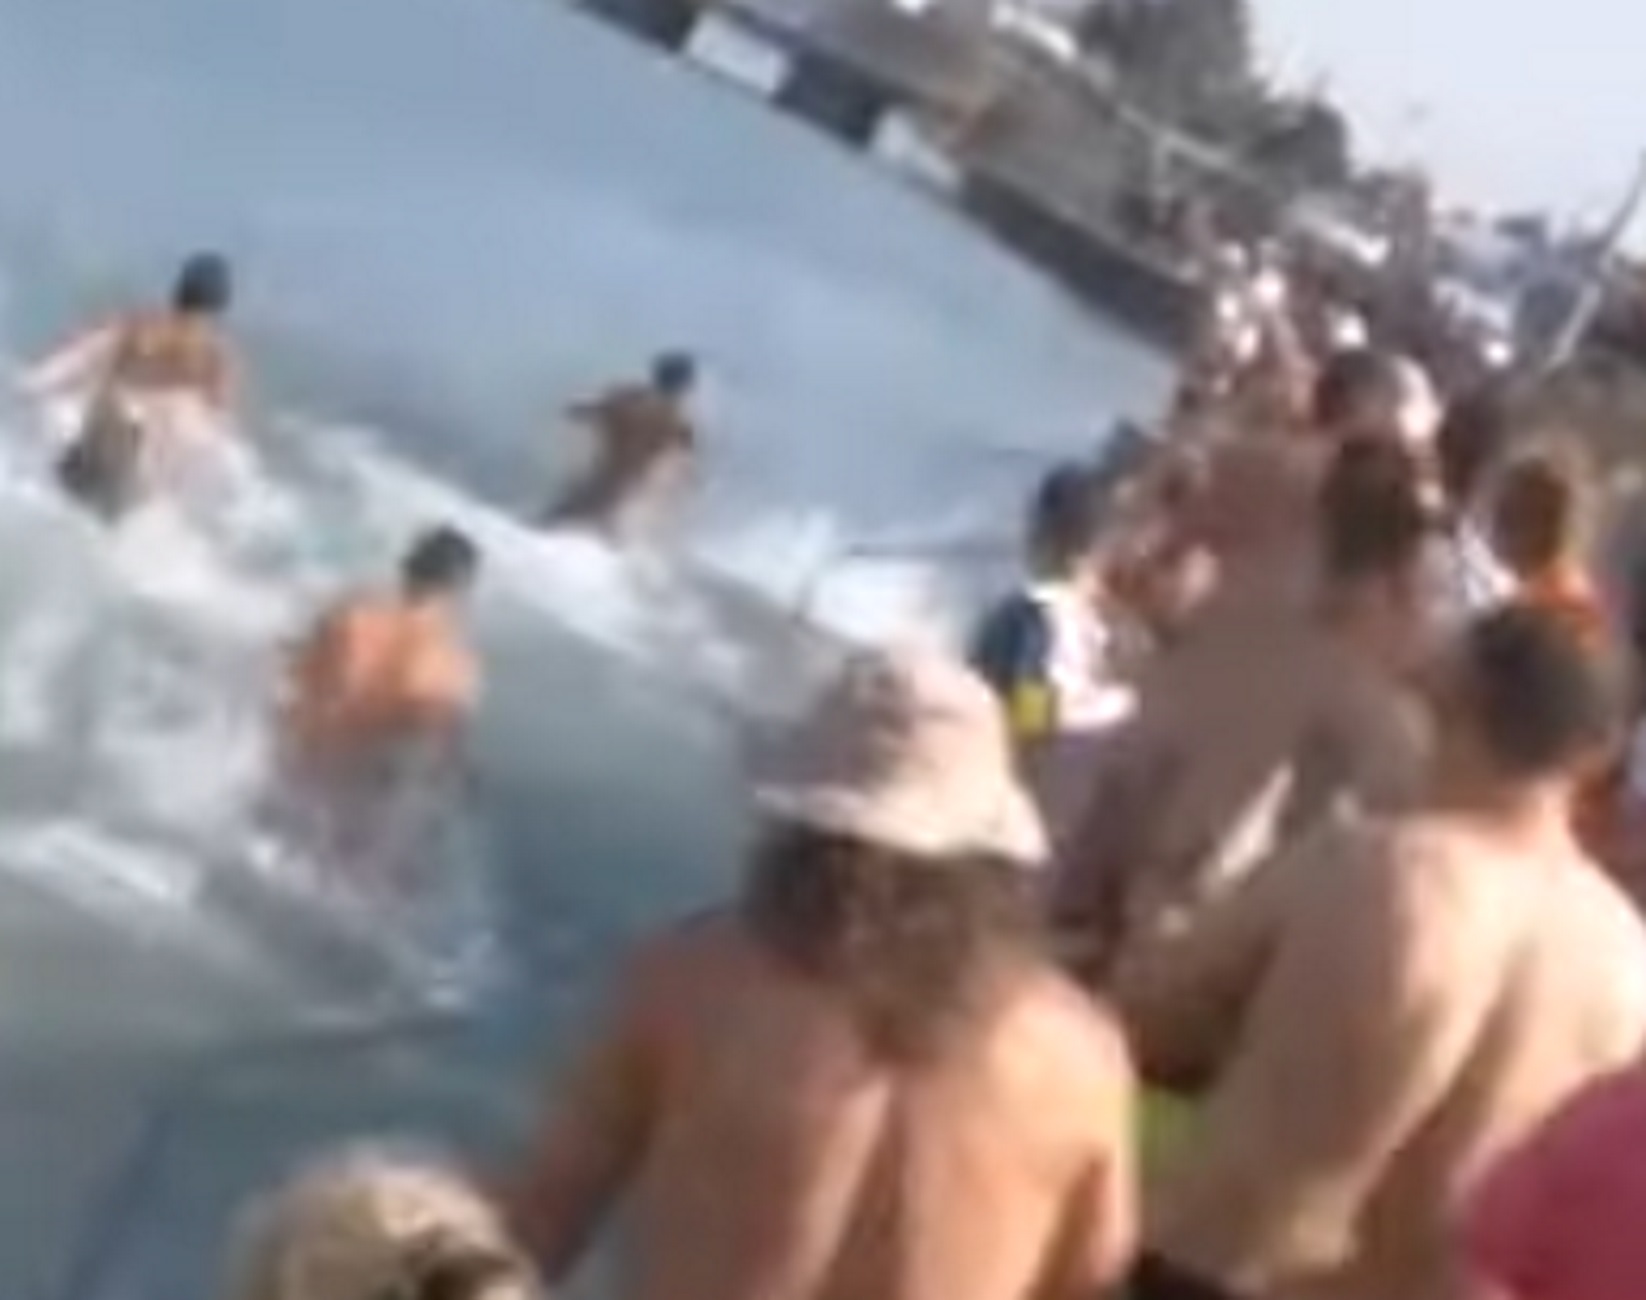 Χαλκίδα: Εικόνες ντροπής σε παραλία μετά από αυτό το στιγμιότυπο – Τα χαμόγελα σταμάτησαν απότομα – video